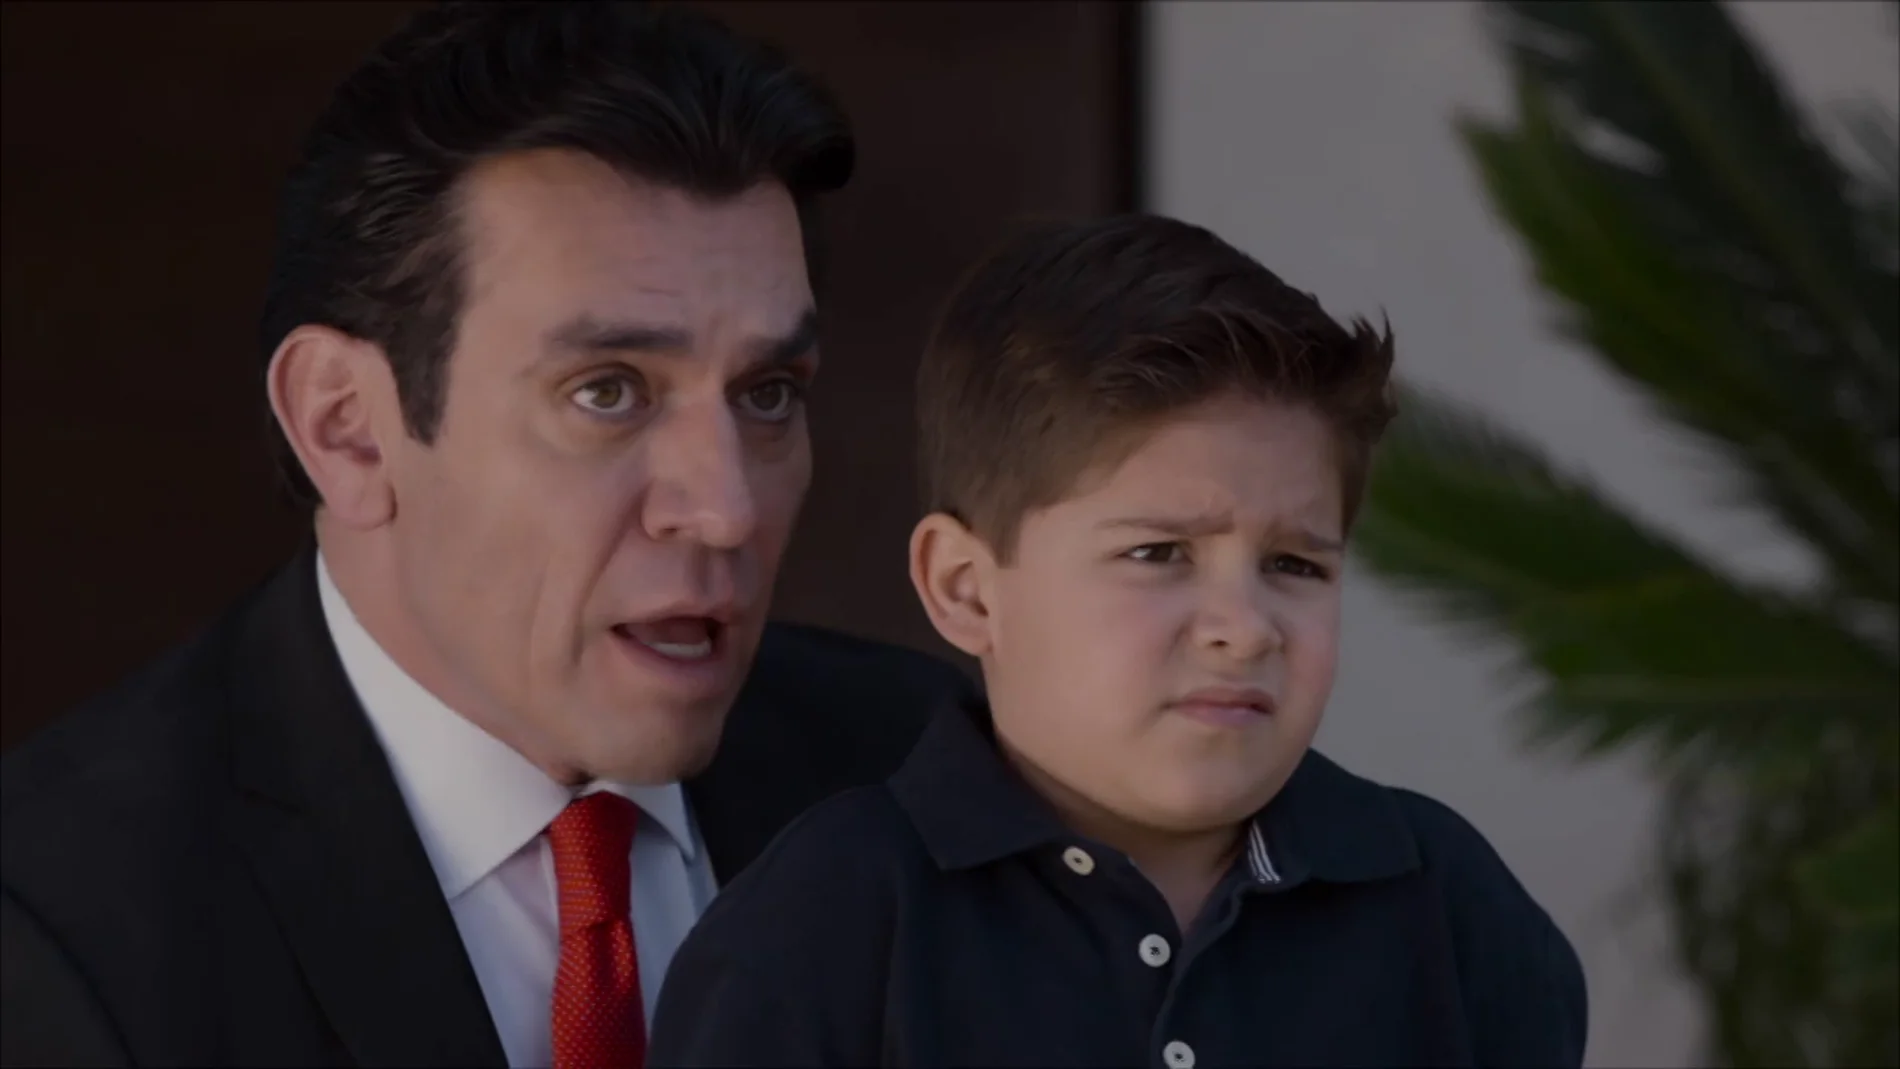 Ernesto le dice toda la verdad a Nicolás: "Pedro es tu padre biológico"